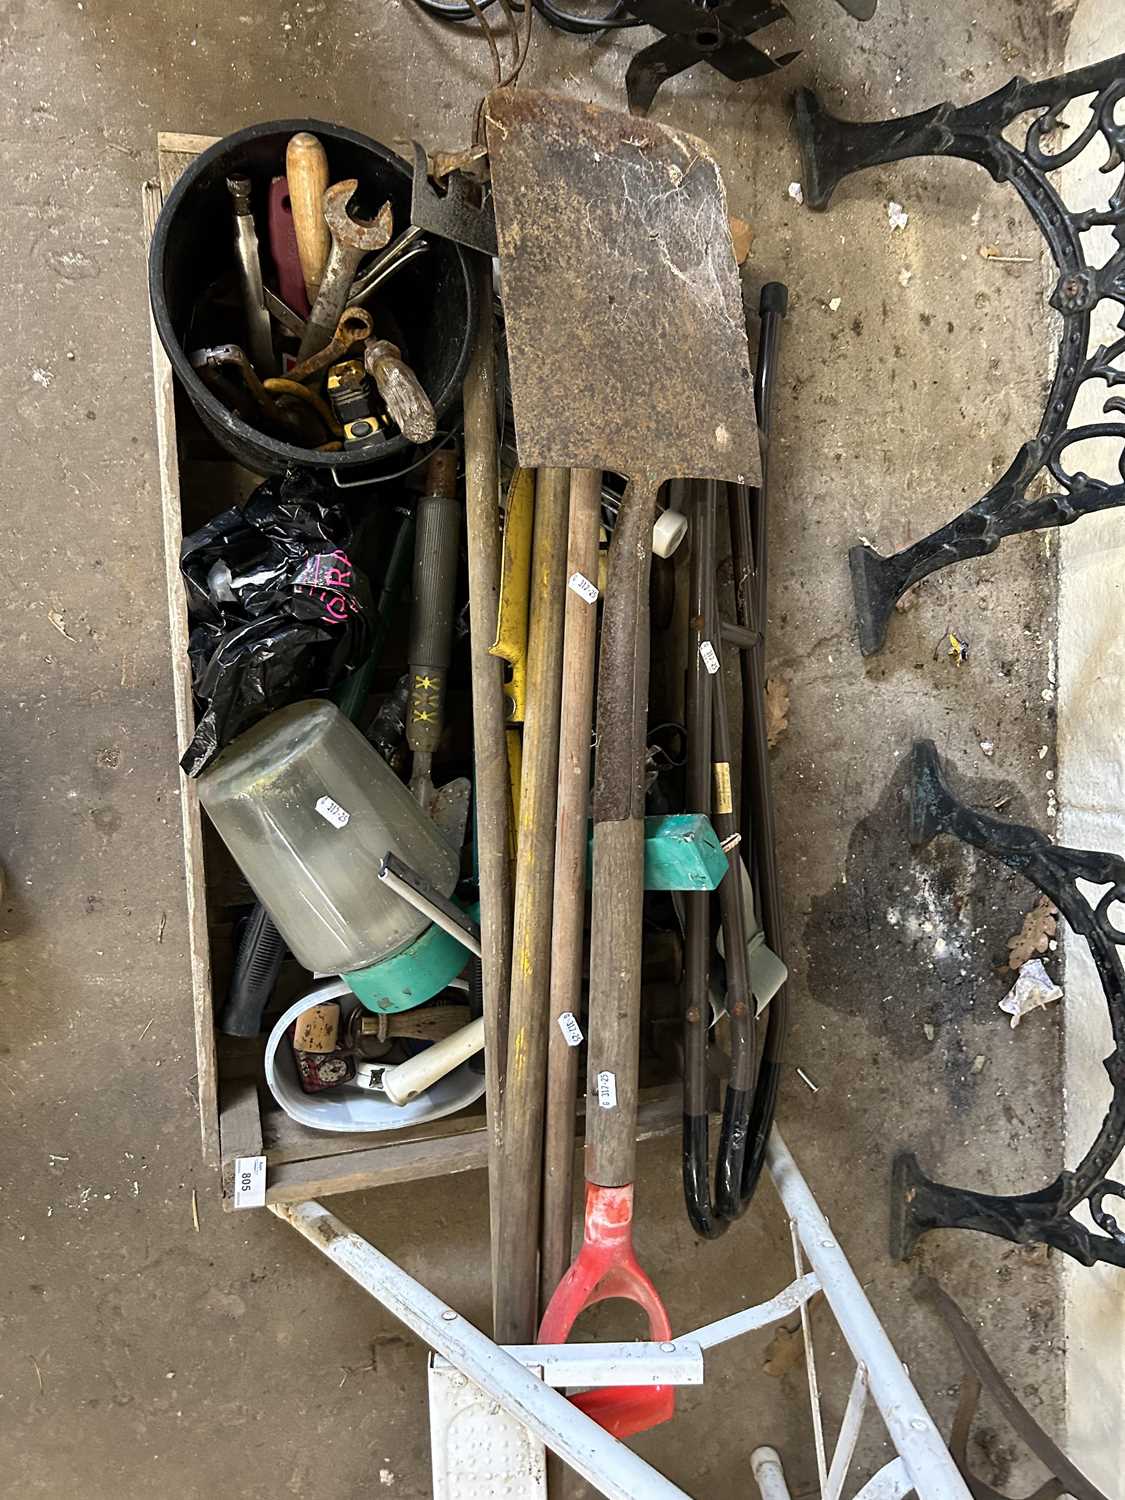 Mixed Lot: Various garden tools, garage clearance items etc